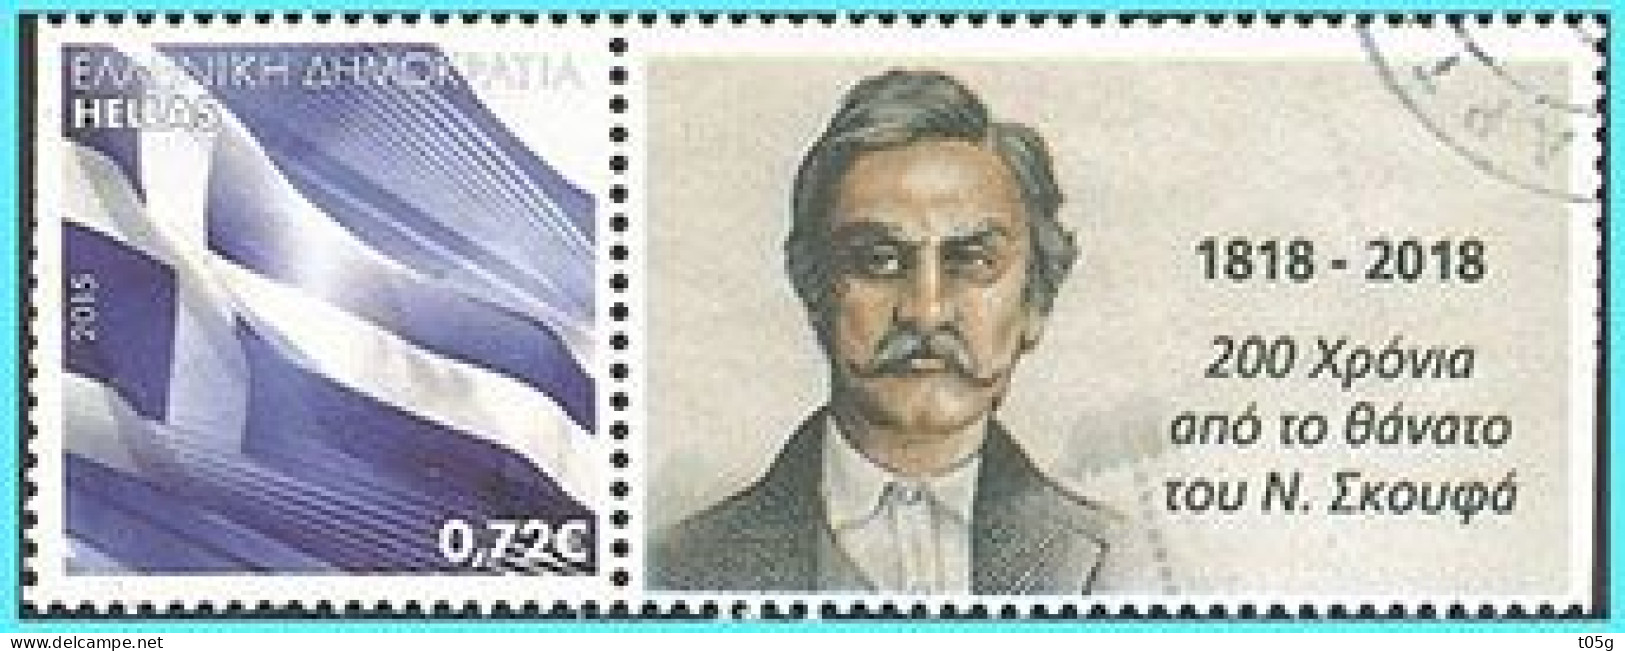 GREECE- GRECE- HELLAS- EPIRUS  2020: Personalised Stamps For τον  Ν. ΣΚΟΥΦΑ  ιδρυτή της ΦΙΛΙΚΗΣ ΕΤΑΙΡΕΙΑΣ  Used - Gebruikt